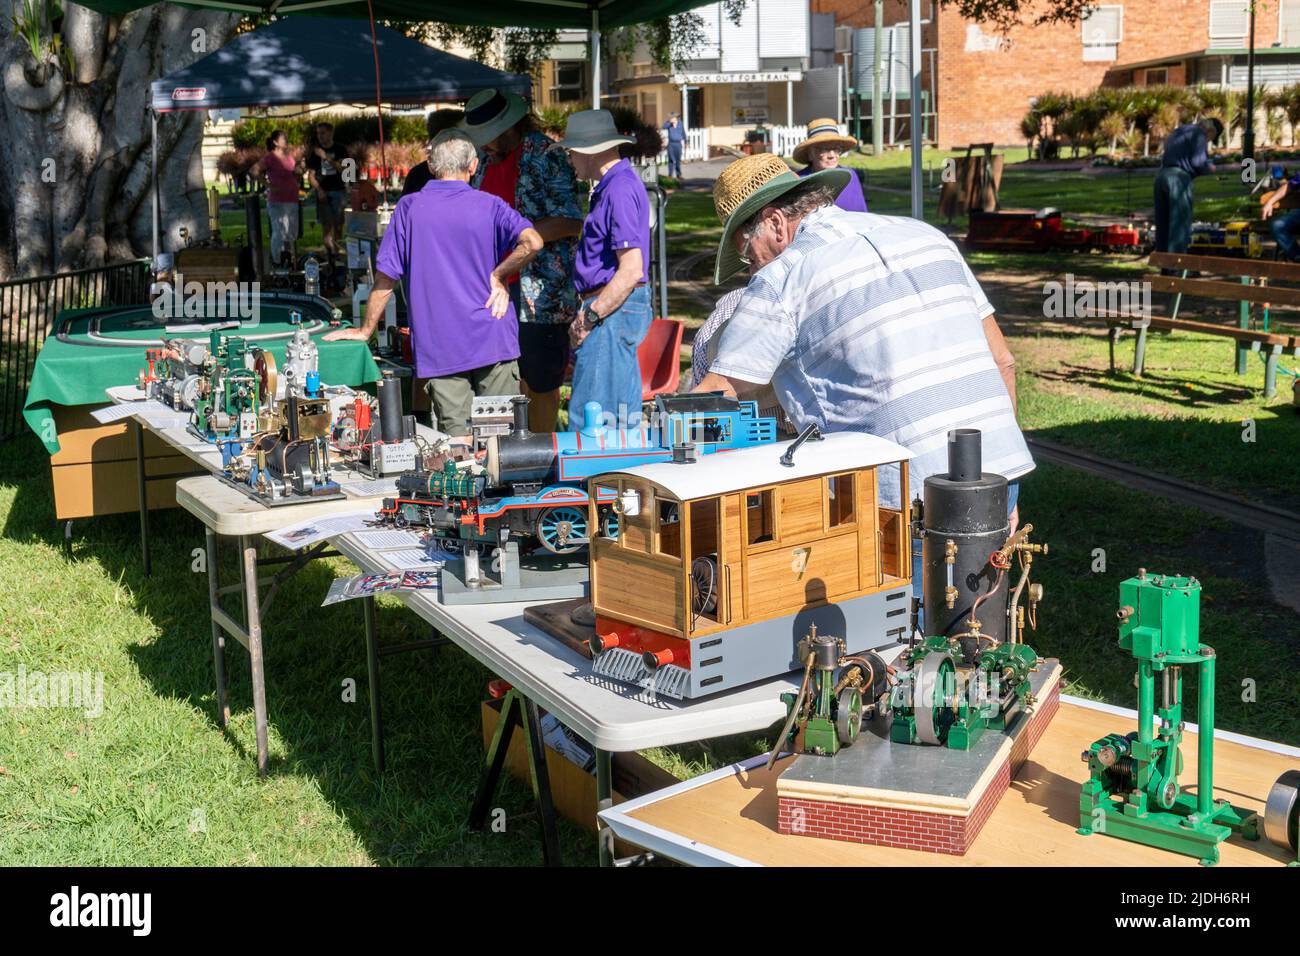 Amateurs de maquettes de chemin de fer et de machine à vapeur présentant des modèles réduits, Queens Park, Maryborough, Queensland Australie Banque D'Images